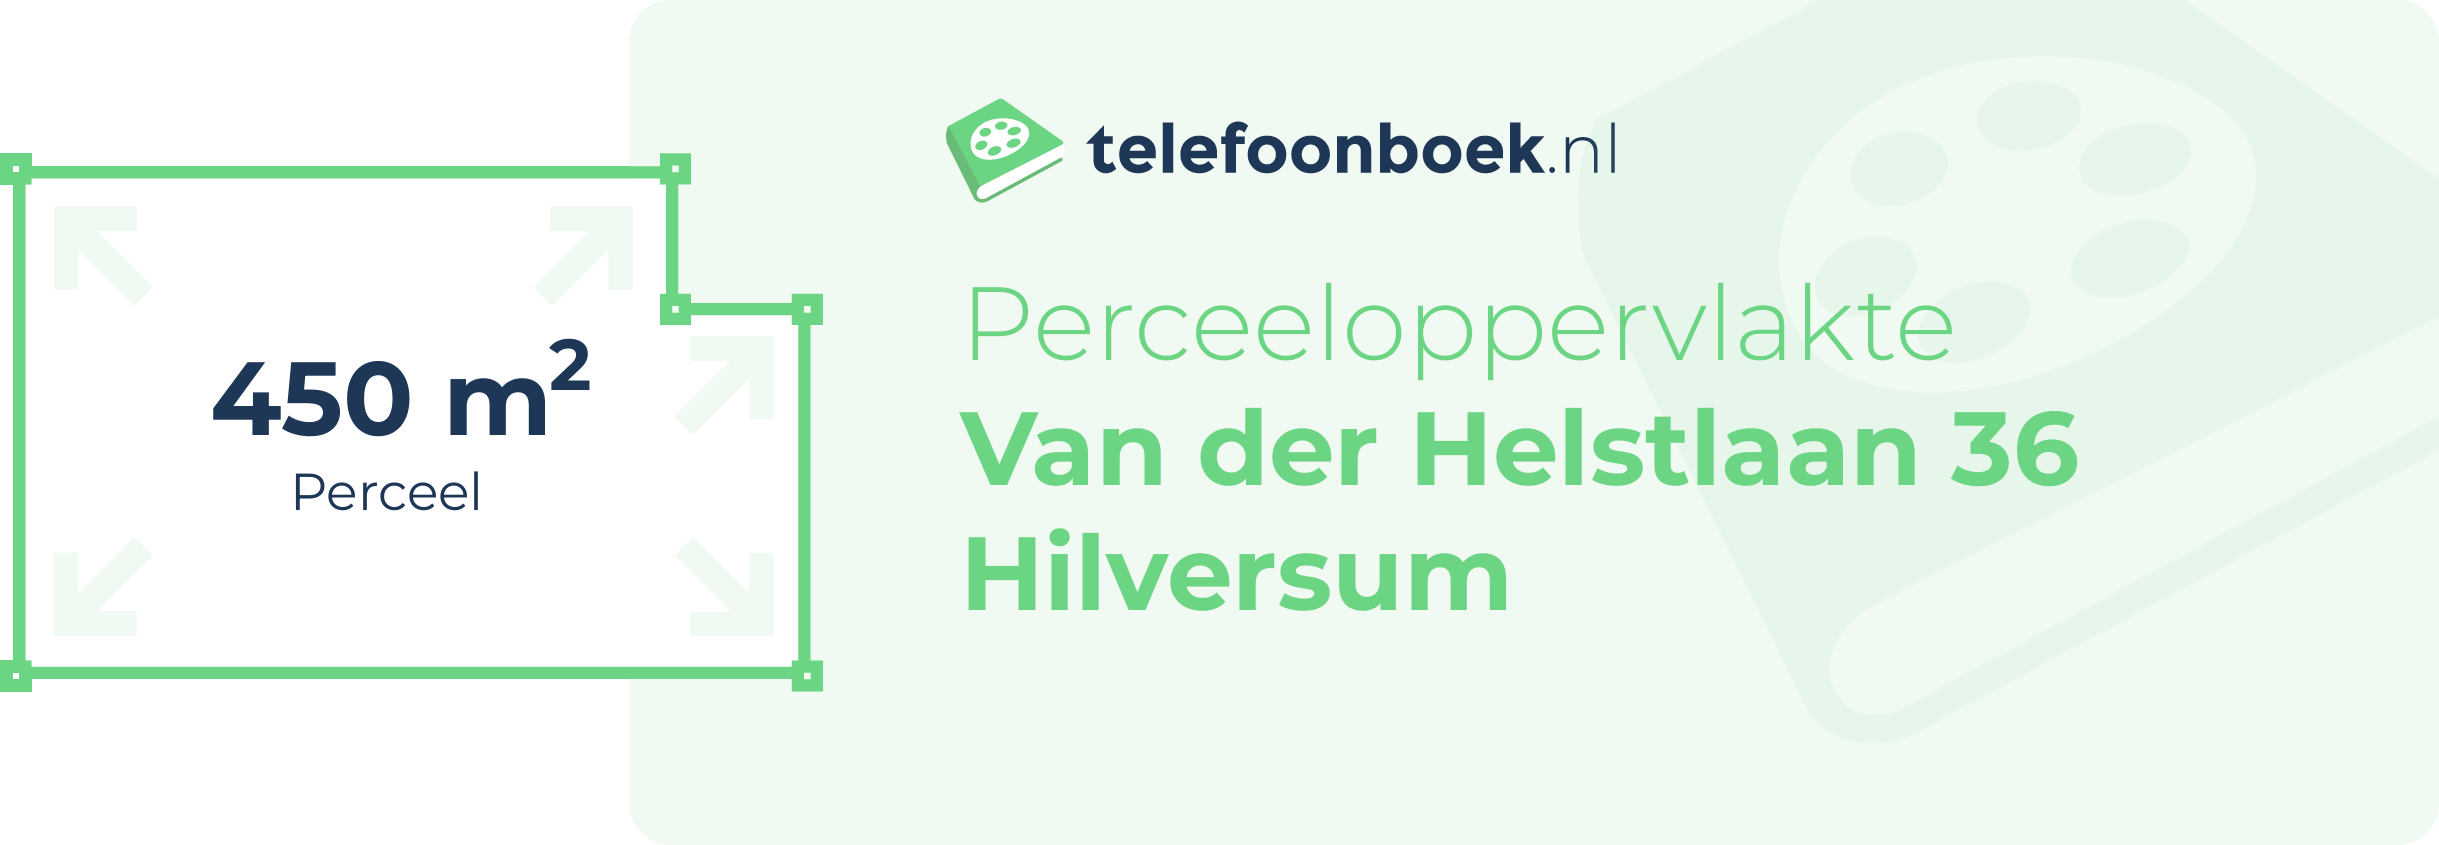 Perceeloppervlakte Van Der Helstlaan 36 Hilversum